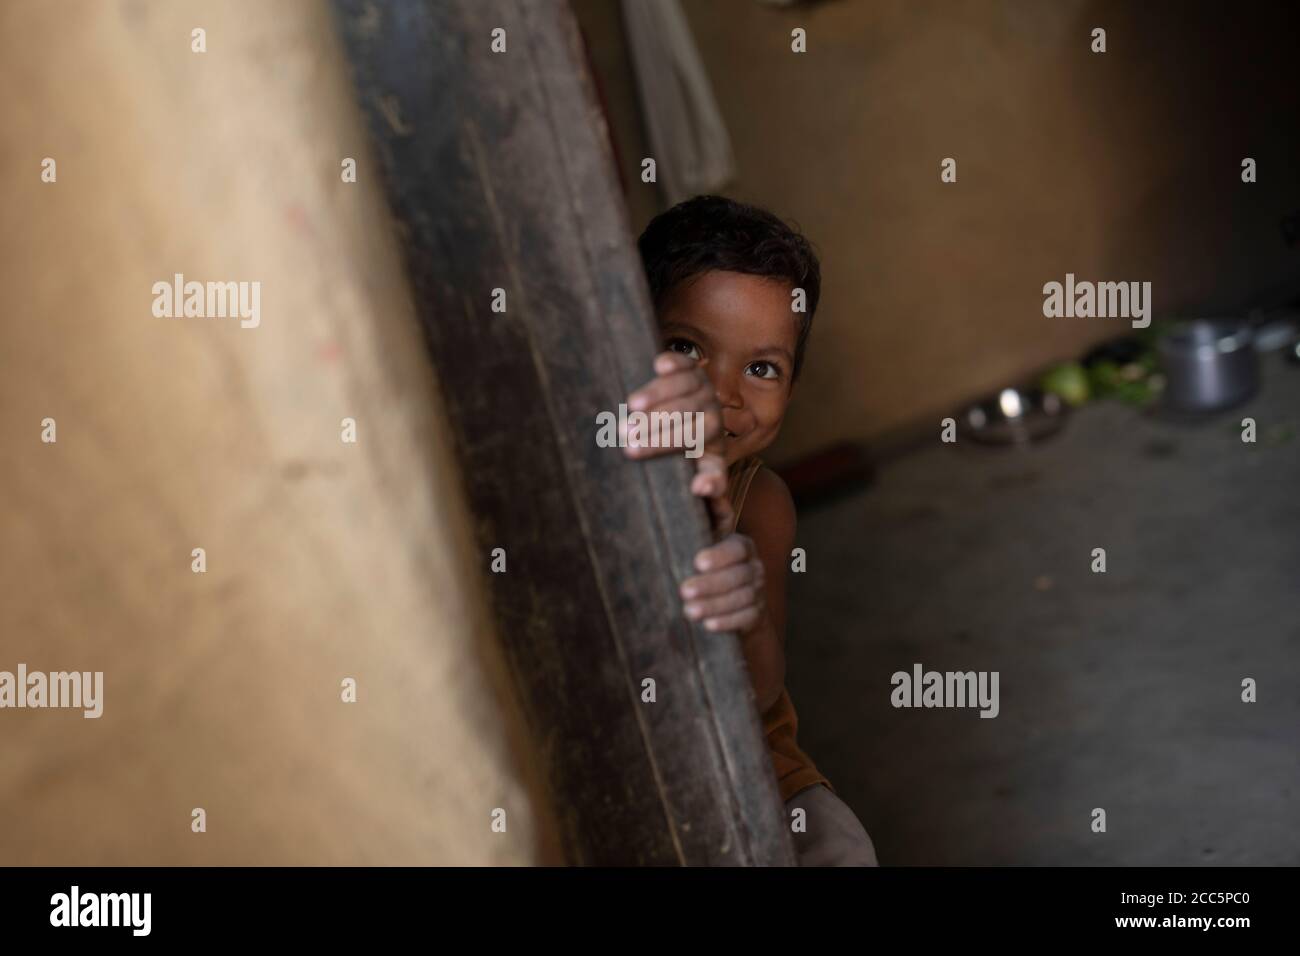 Un niño de cuatro años de edad se apareaba de la puerta de su casa en Bihar, India, Asia del Sur. Foto de stock